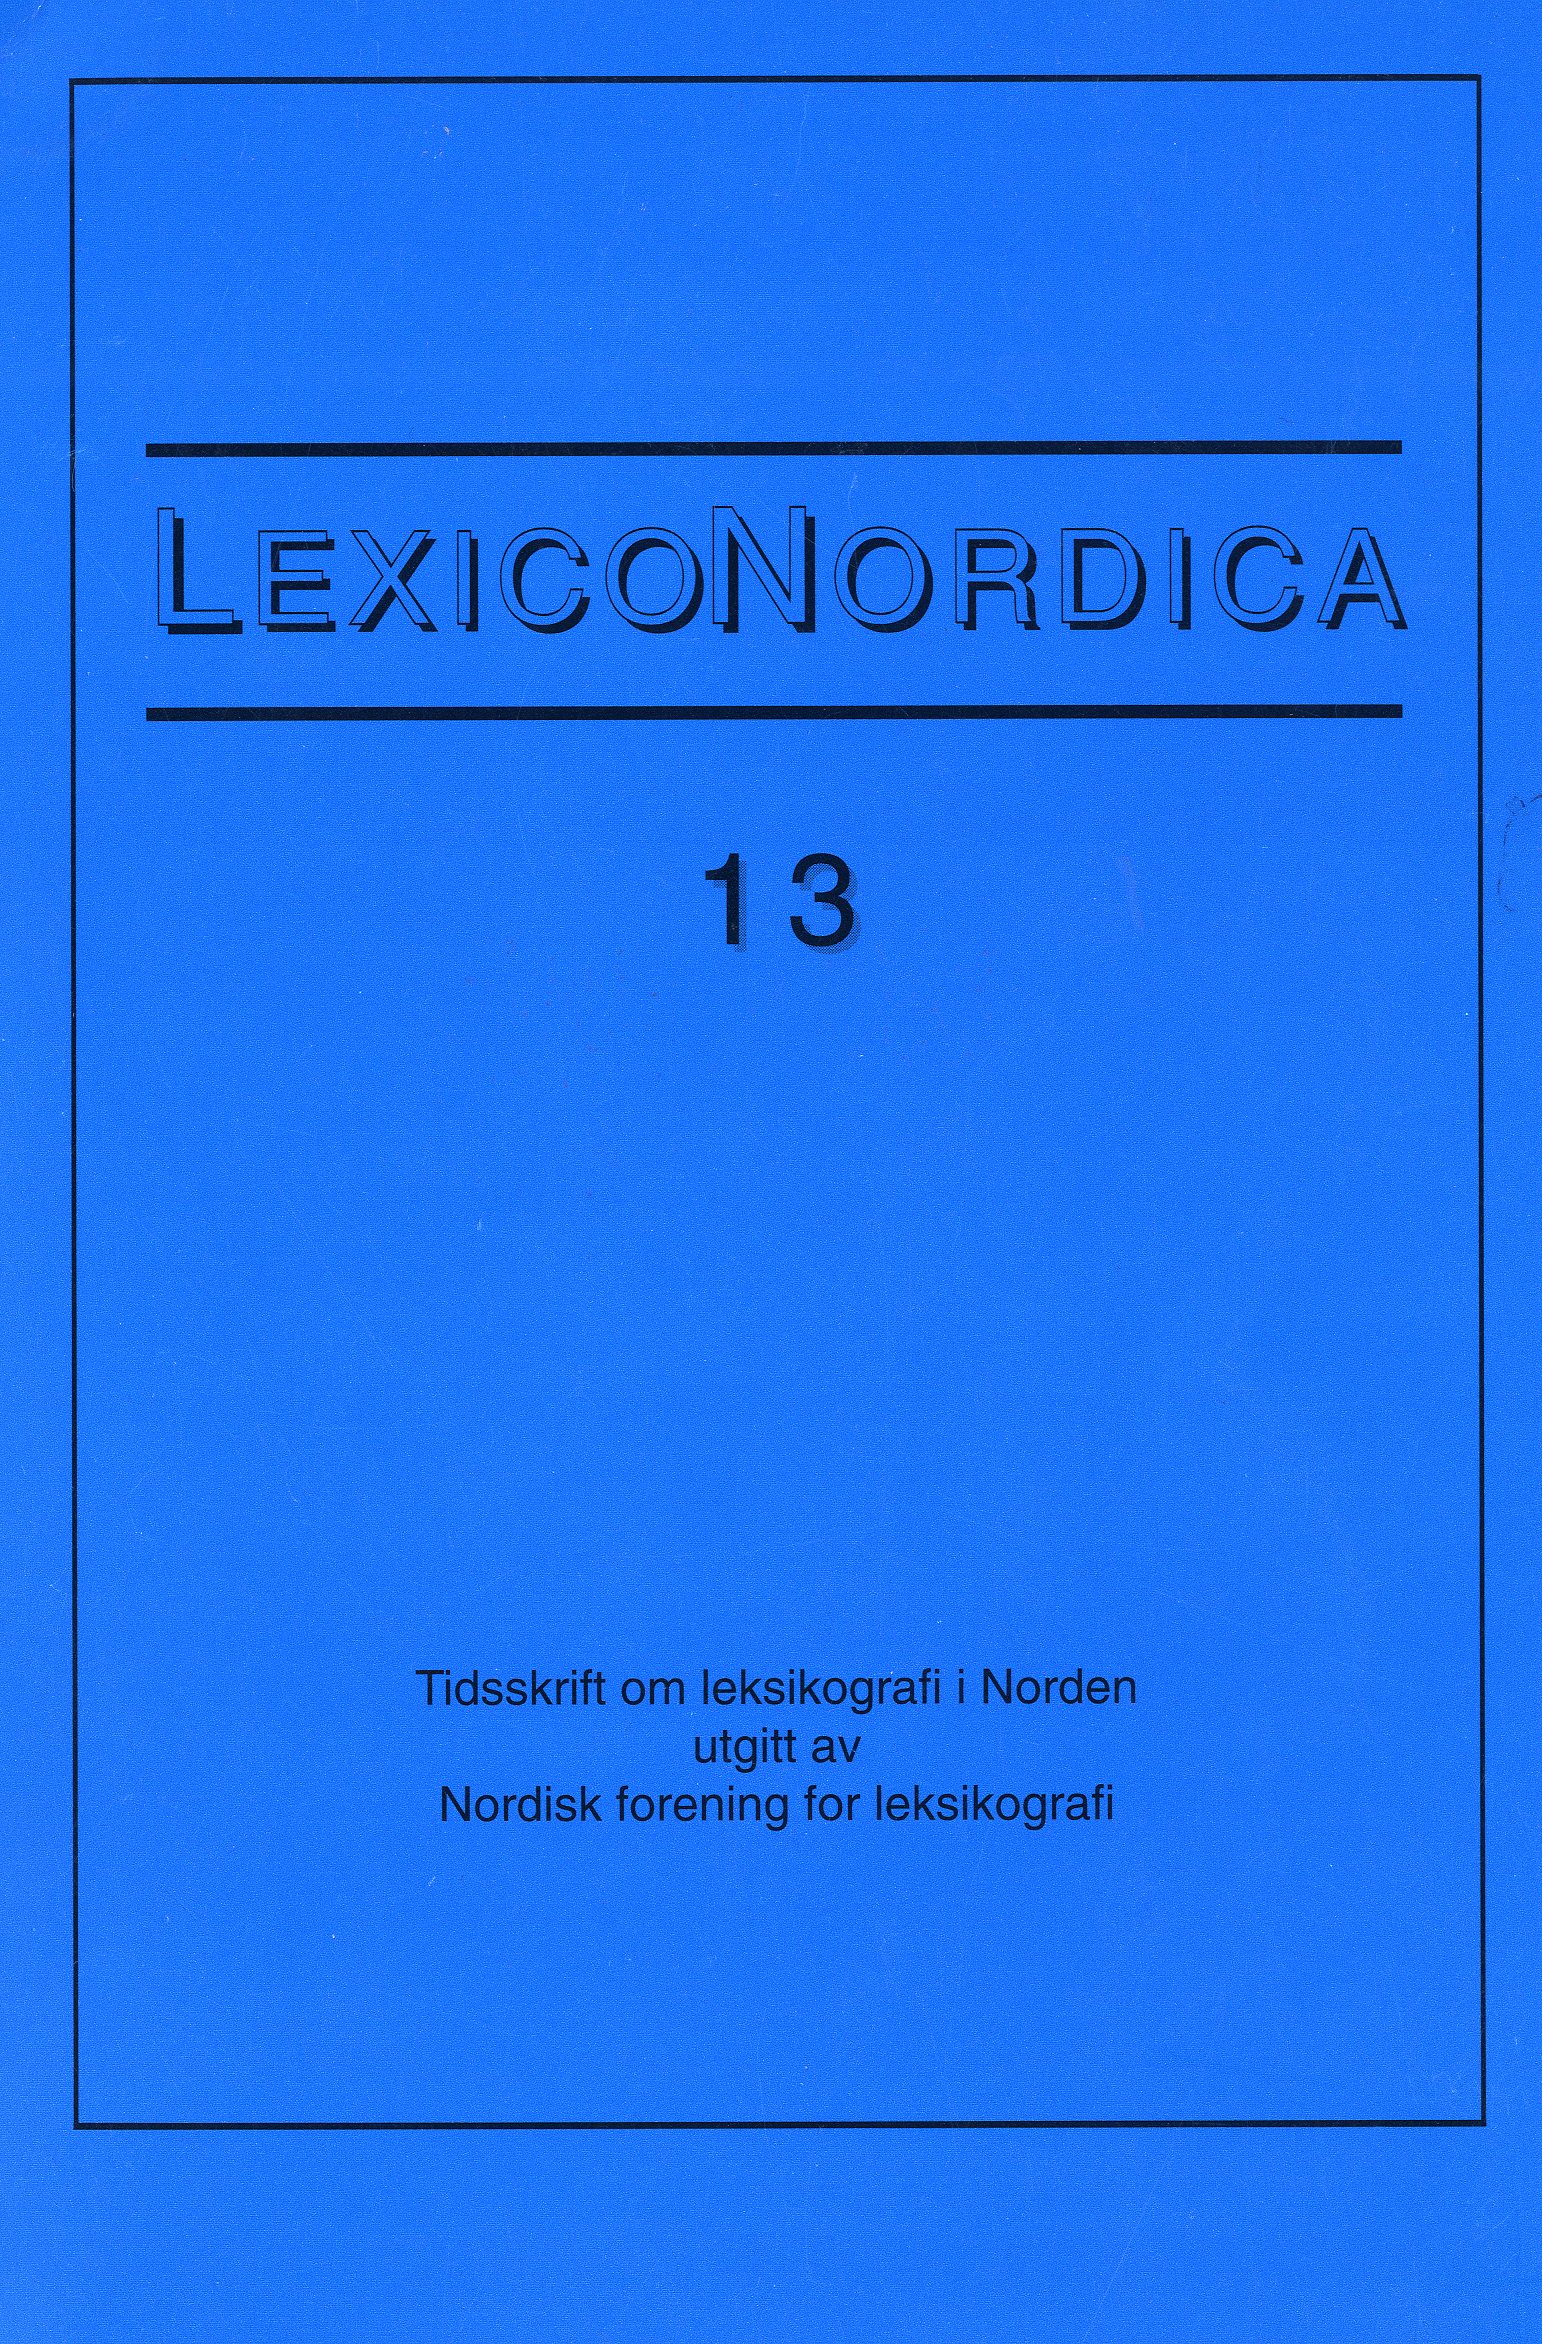 					View No. 13 (2006): Historiske ordbøger i Norden
				